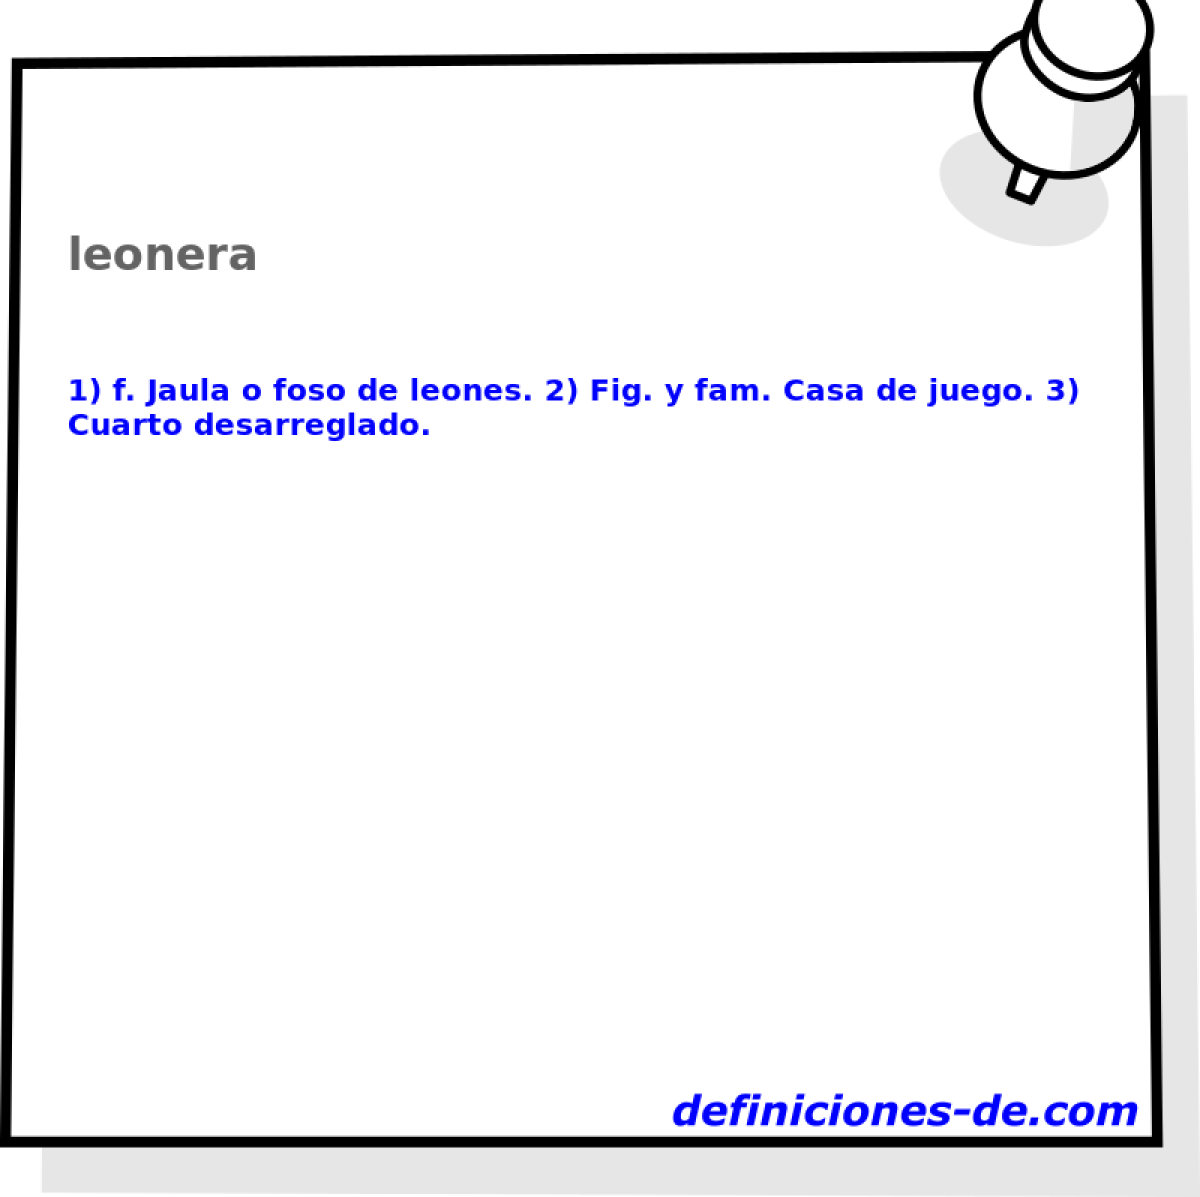 leonera 